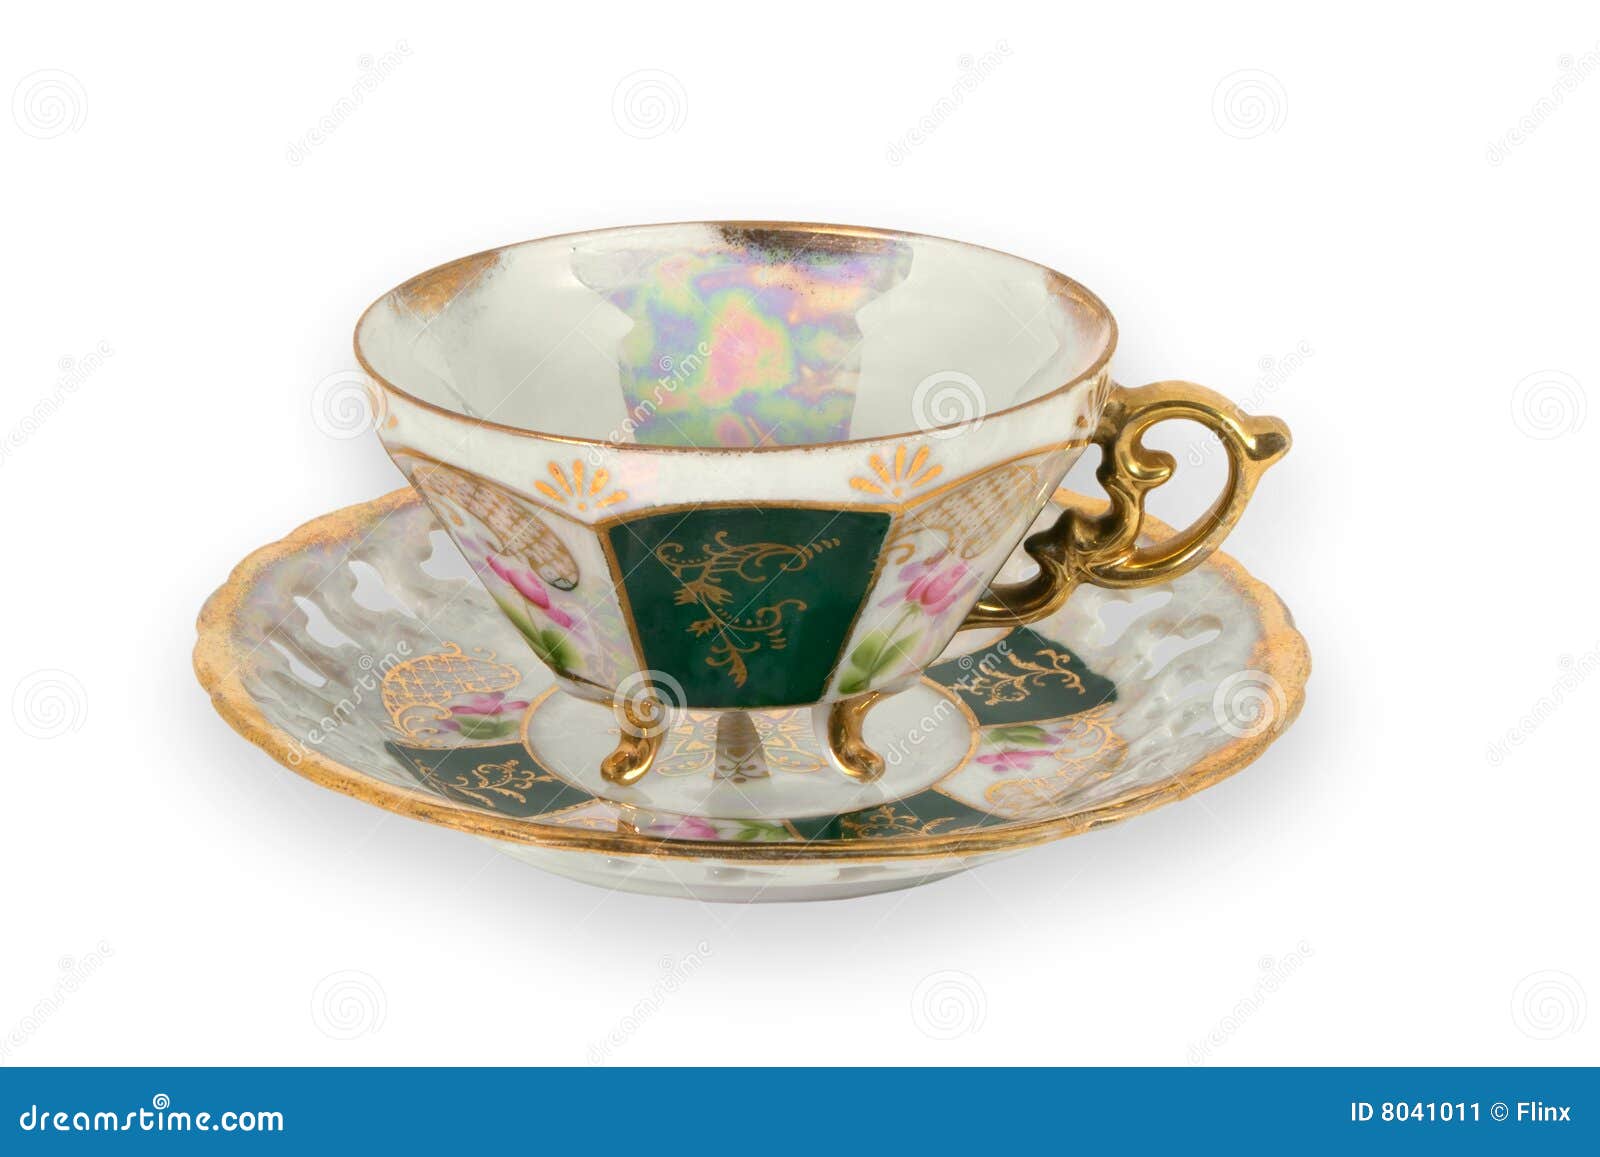 fancy gilded teacup